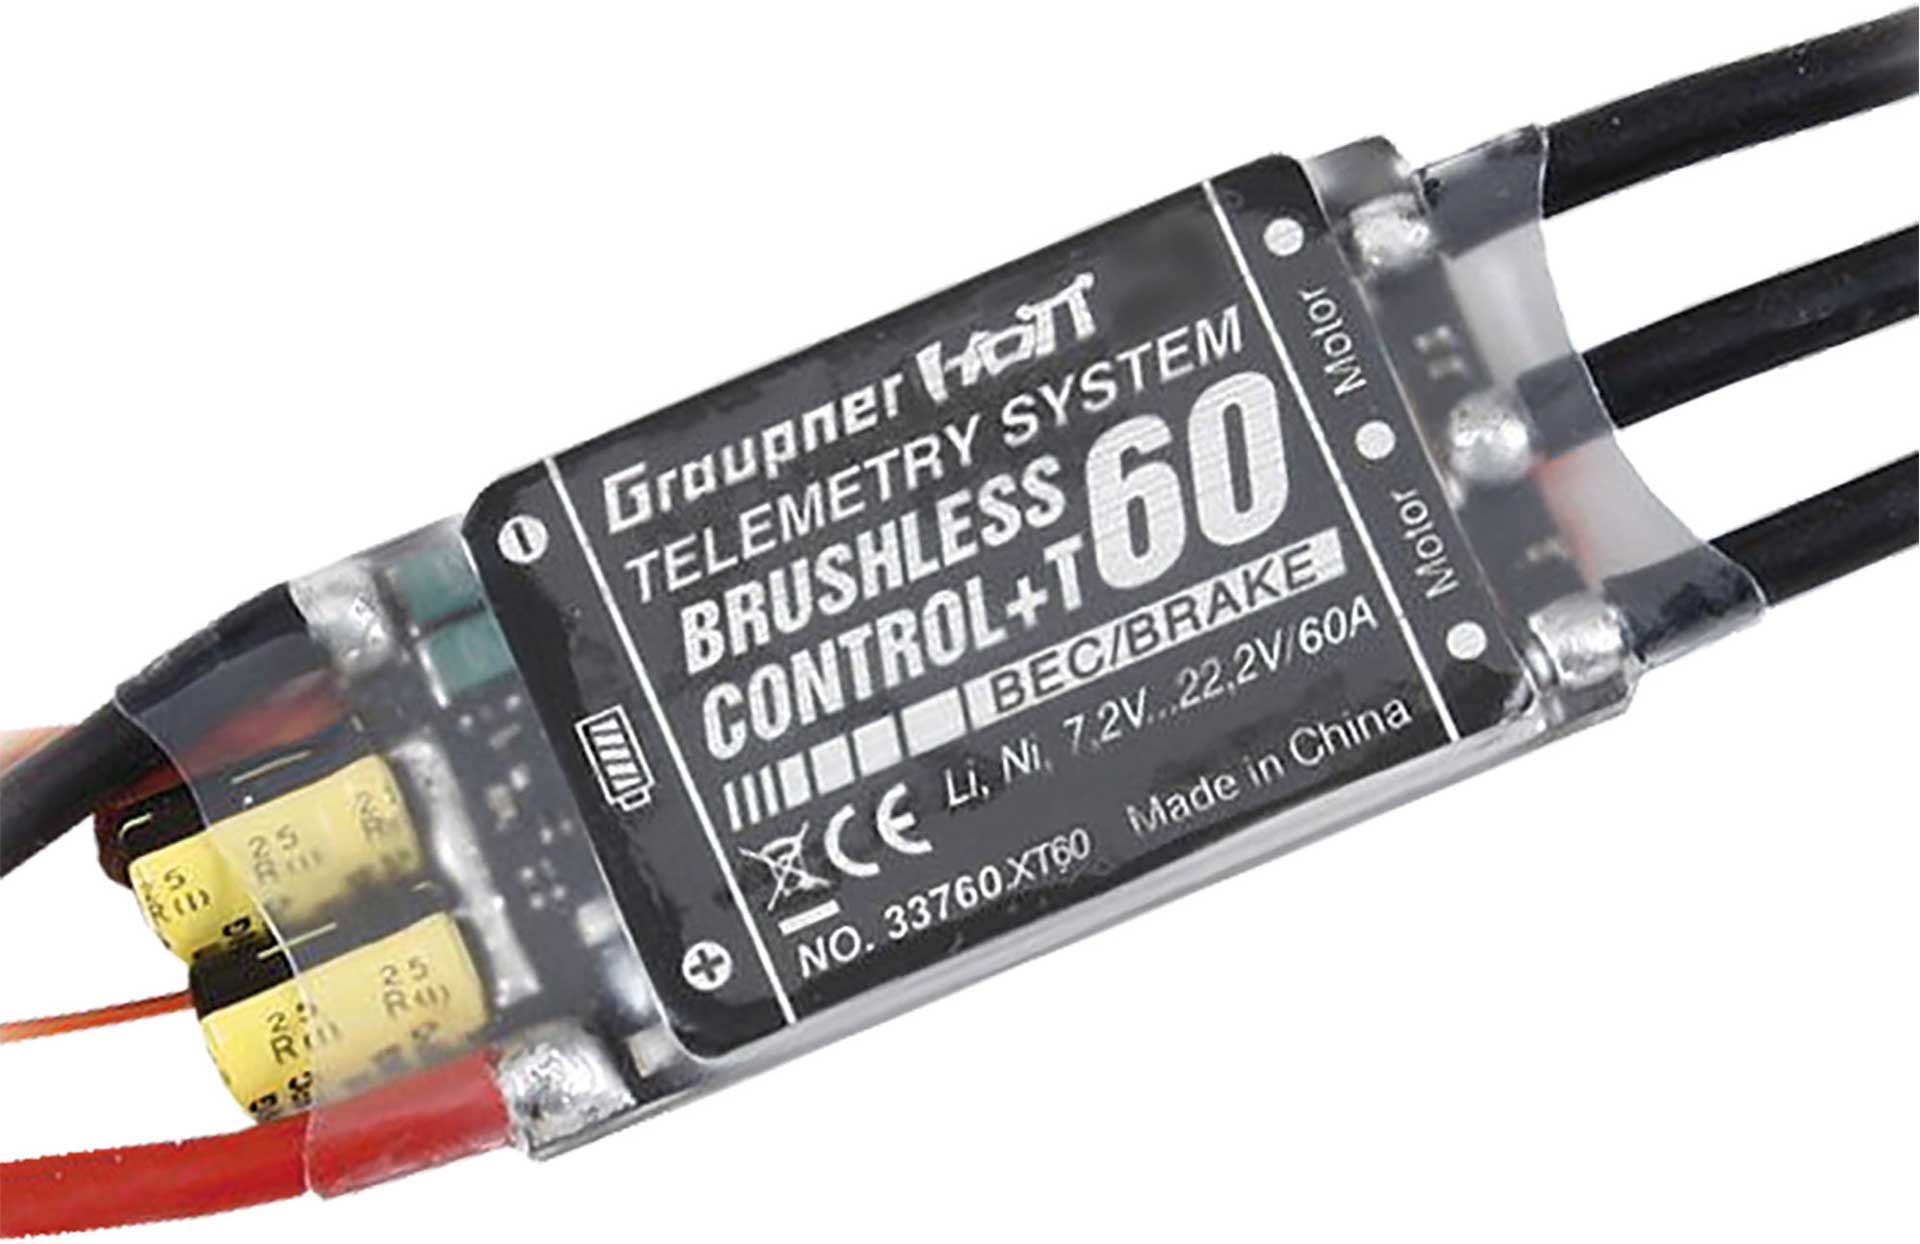 GRAUPNER BRUSHLESS CONTROL+ T 60 BEC G2 XT-60 REGLER